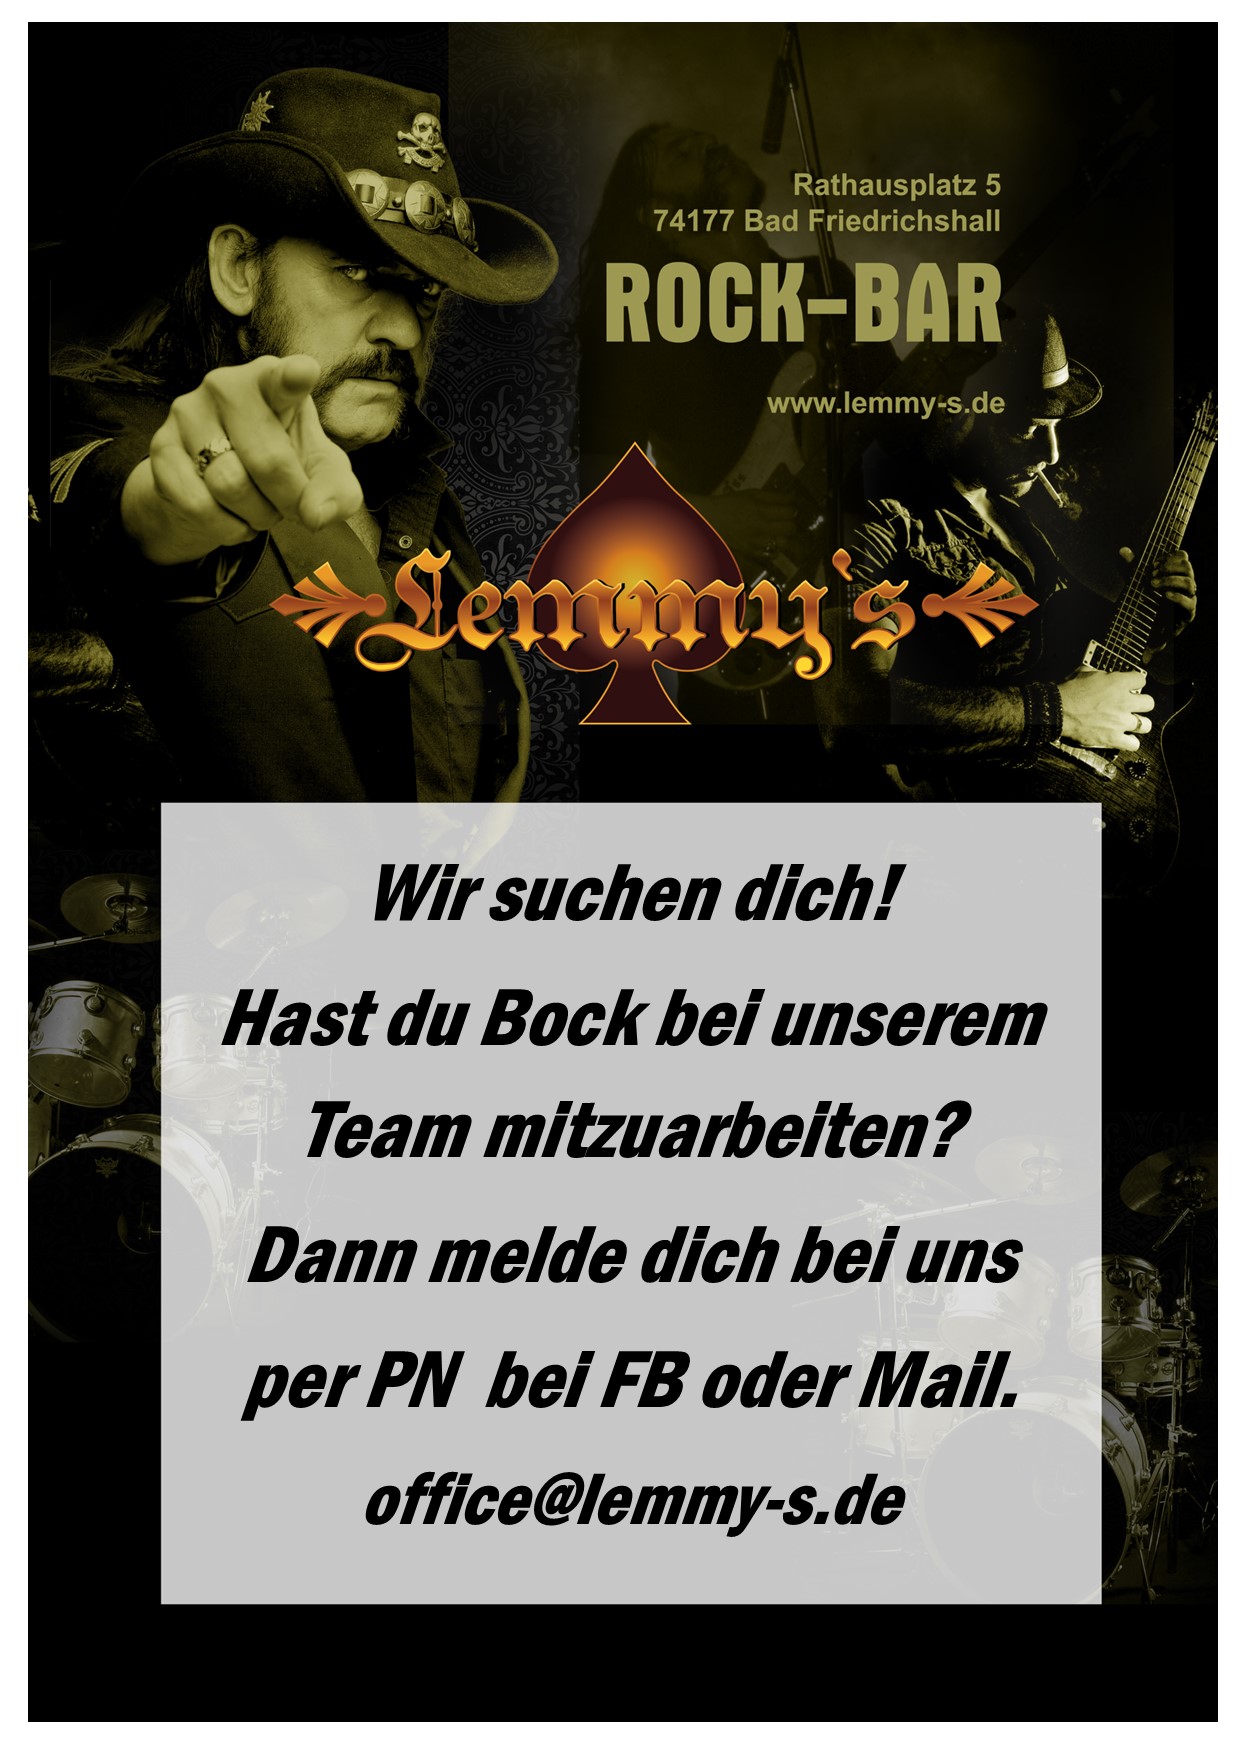 (c) Lemmy-s.de